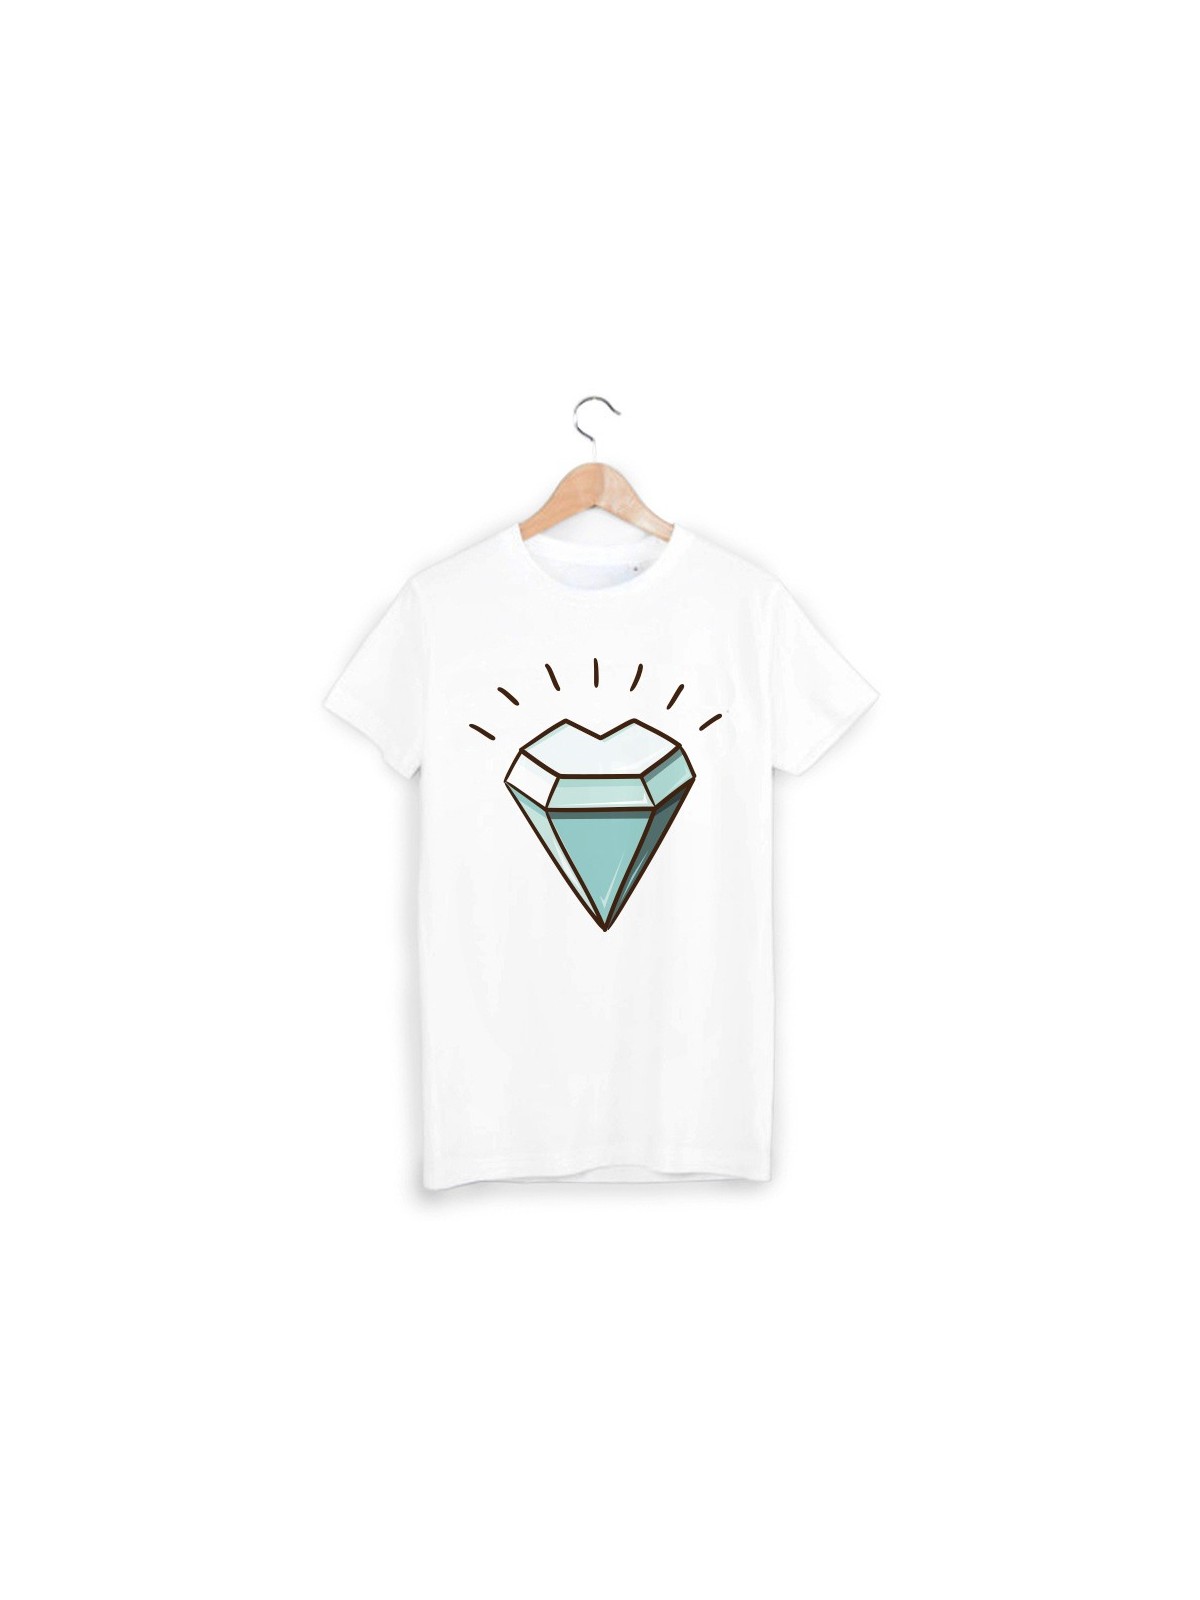 T-Shirt diamant ref 1322